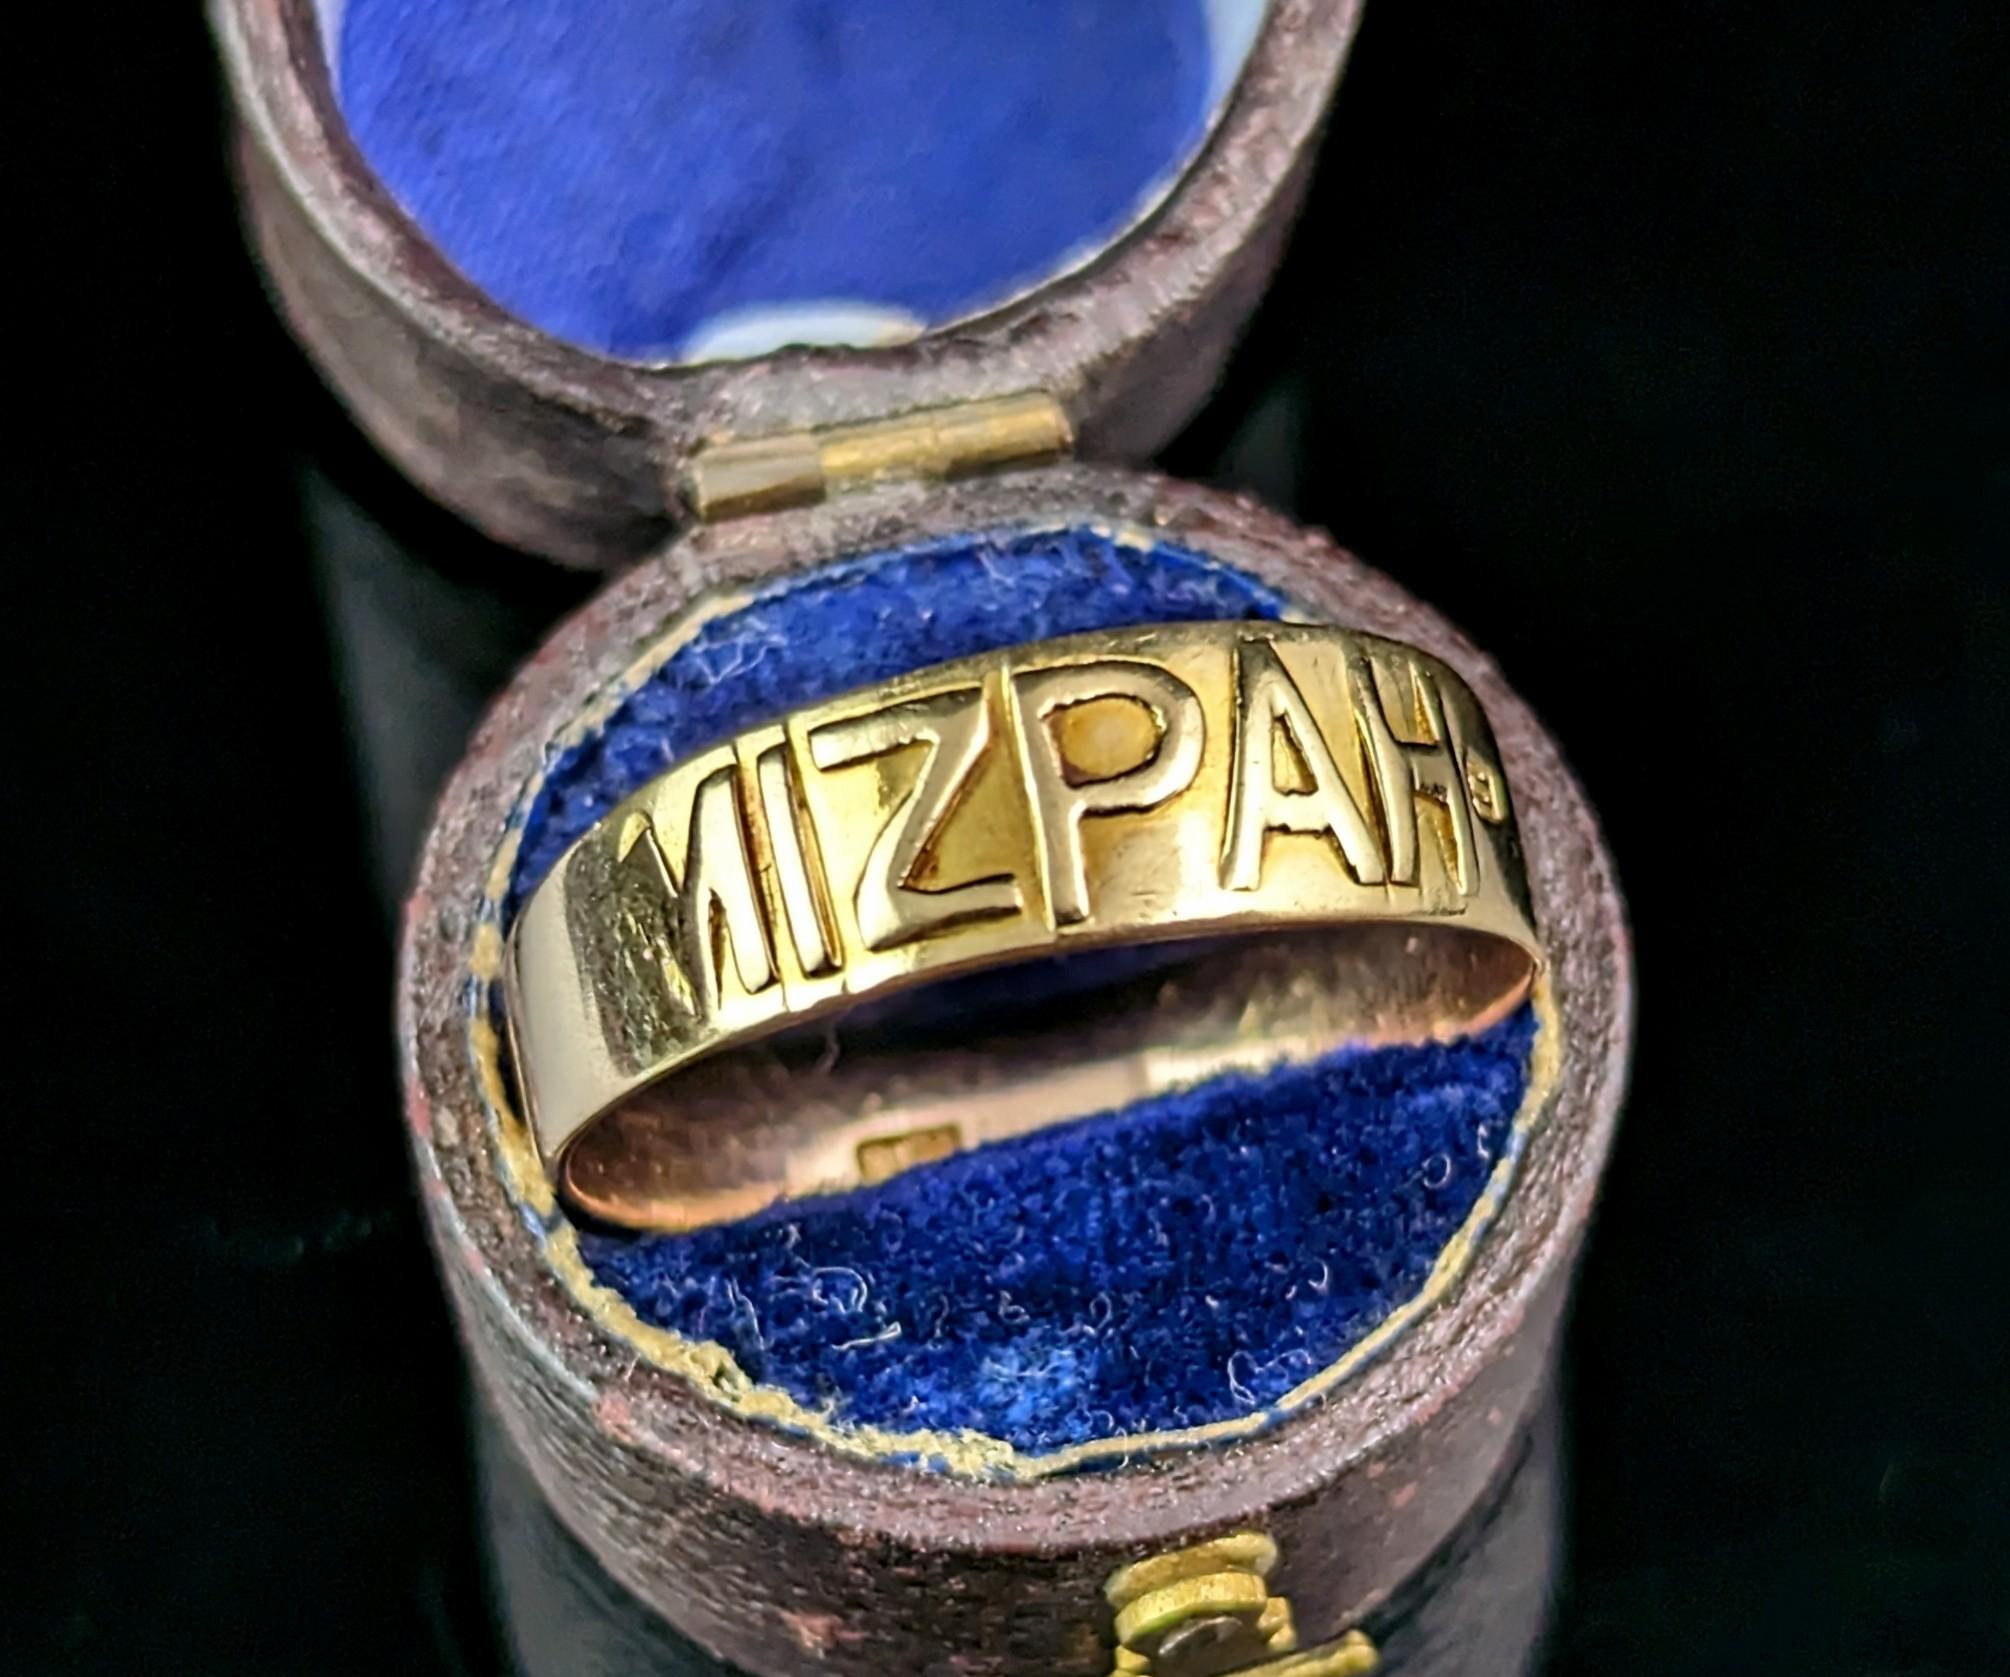 Magnifique bague Mizpah en or 9ct de l'époque victorienne.

Il s'agit d'une bague à anneau avec un lettrage en or jaune appliqué sur le devant de l'anneau épelant Mizpah.

Cette bague est en or bicolore car elle possède un demi-bandeau de